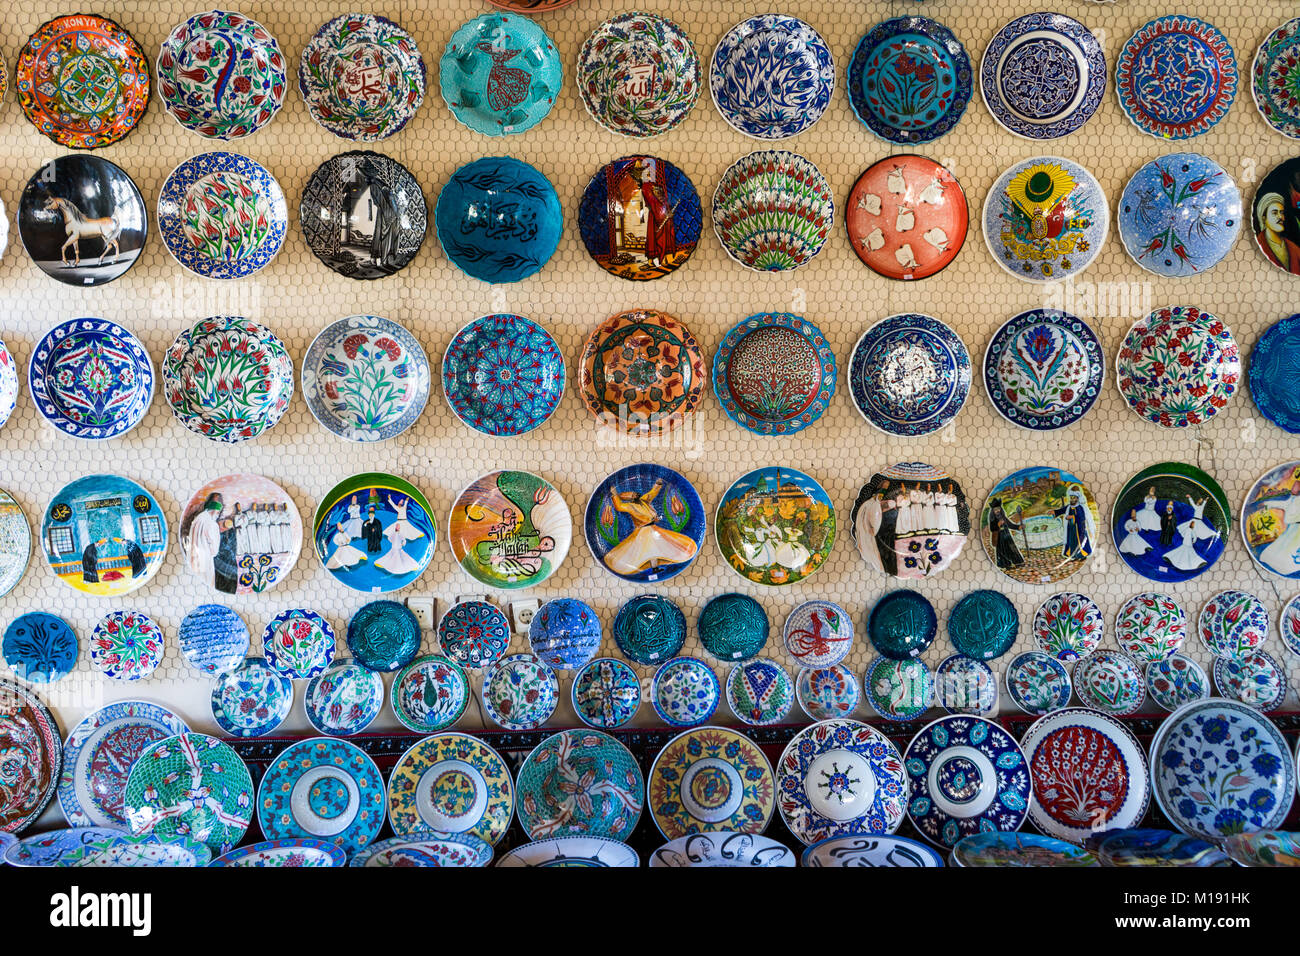 Souvenirs de céramique colorée dans le mur, Konya - Turquie Banque D'Images